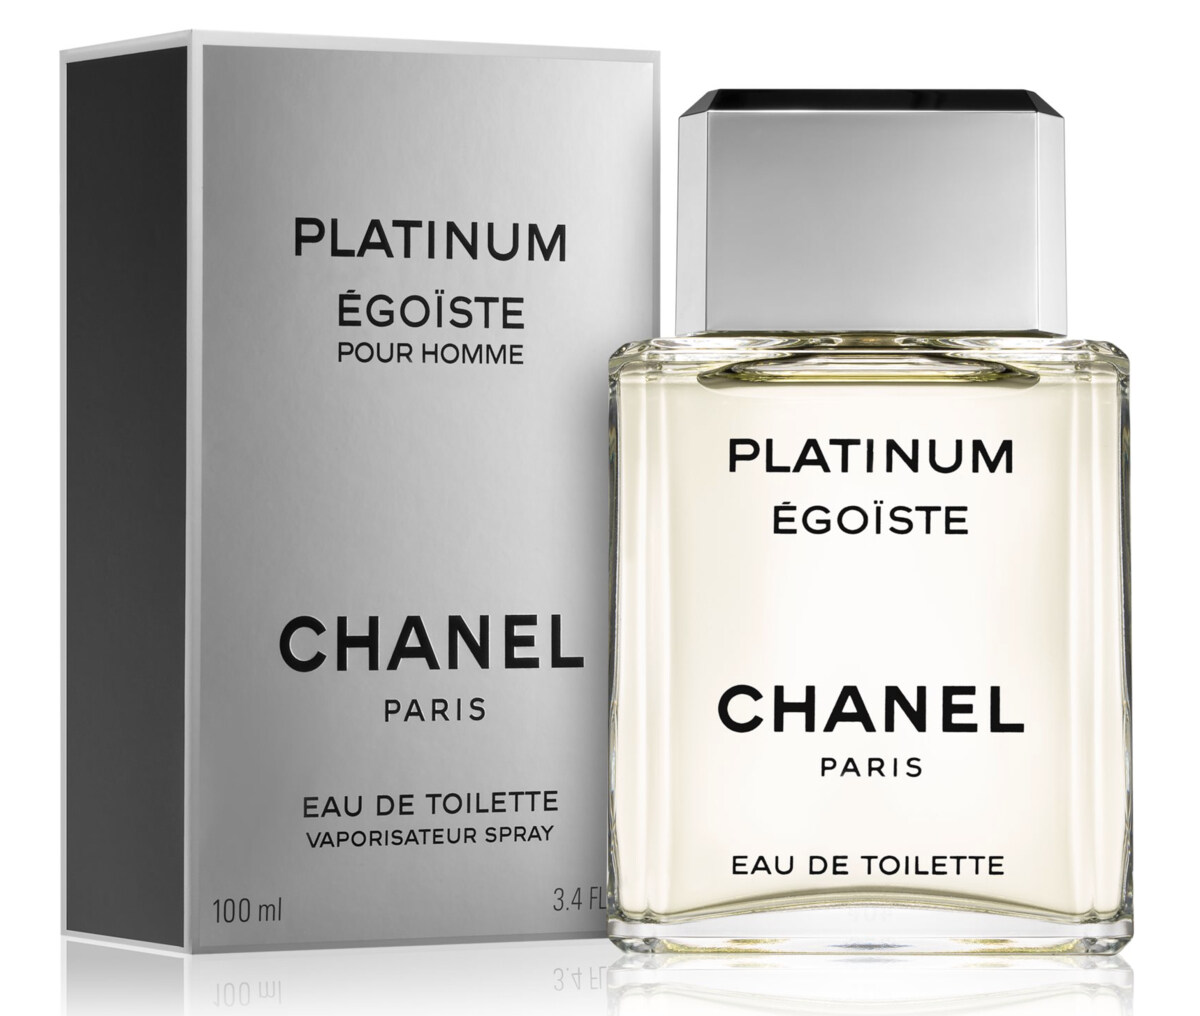 Chanel Platinum Egoiste Pour Homme EDT 100ml  Perfume For Men   DScentsation